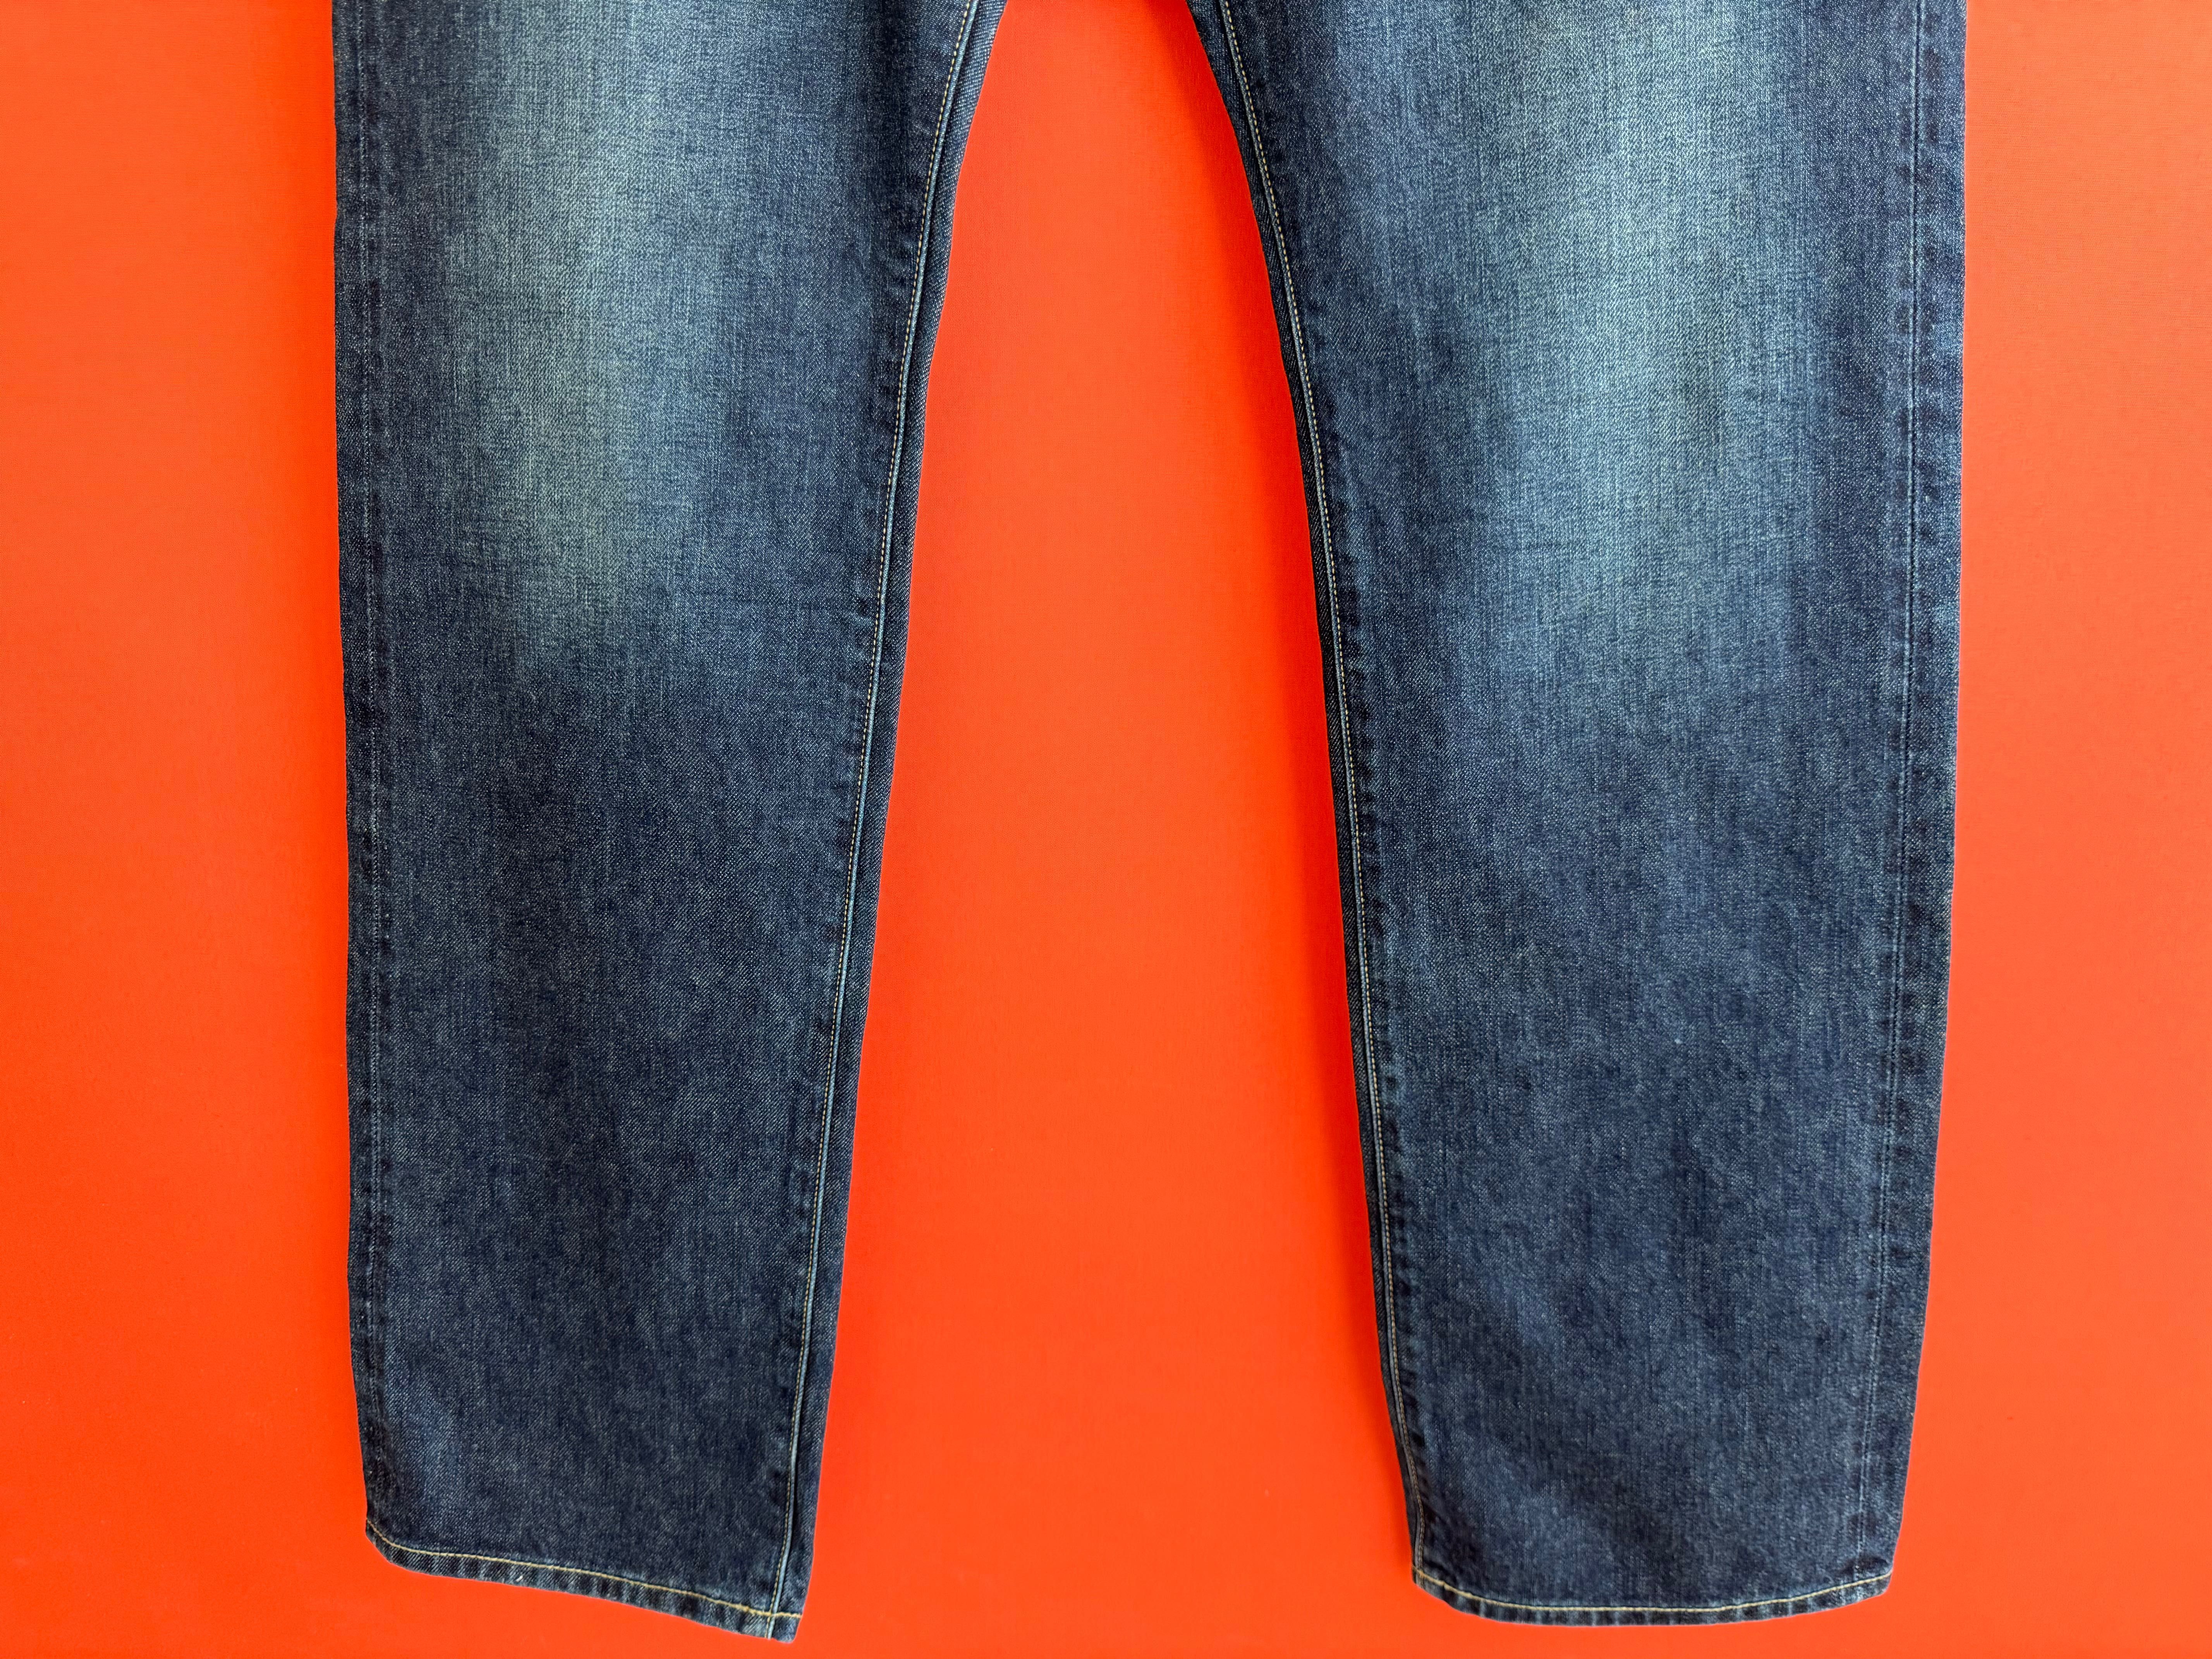 Uniqlo Selvage оригинал мужские джинсы штаны размер 34 Б У